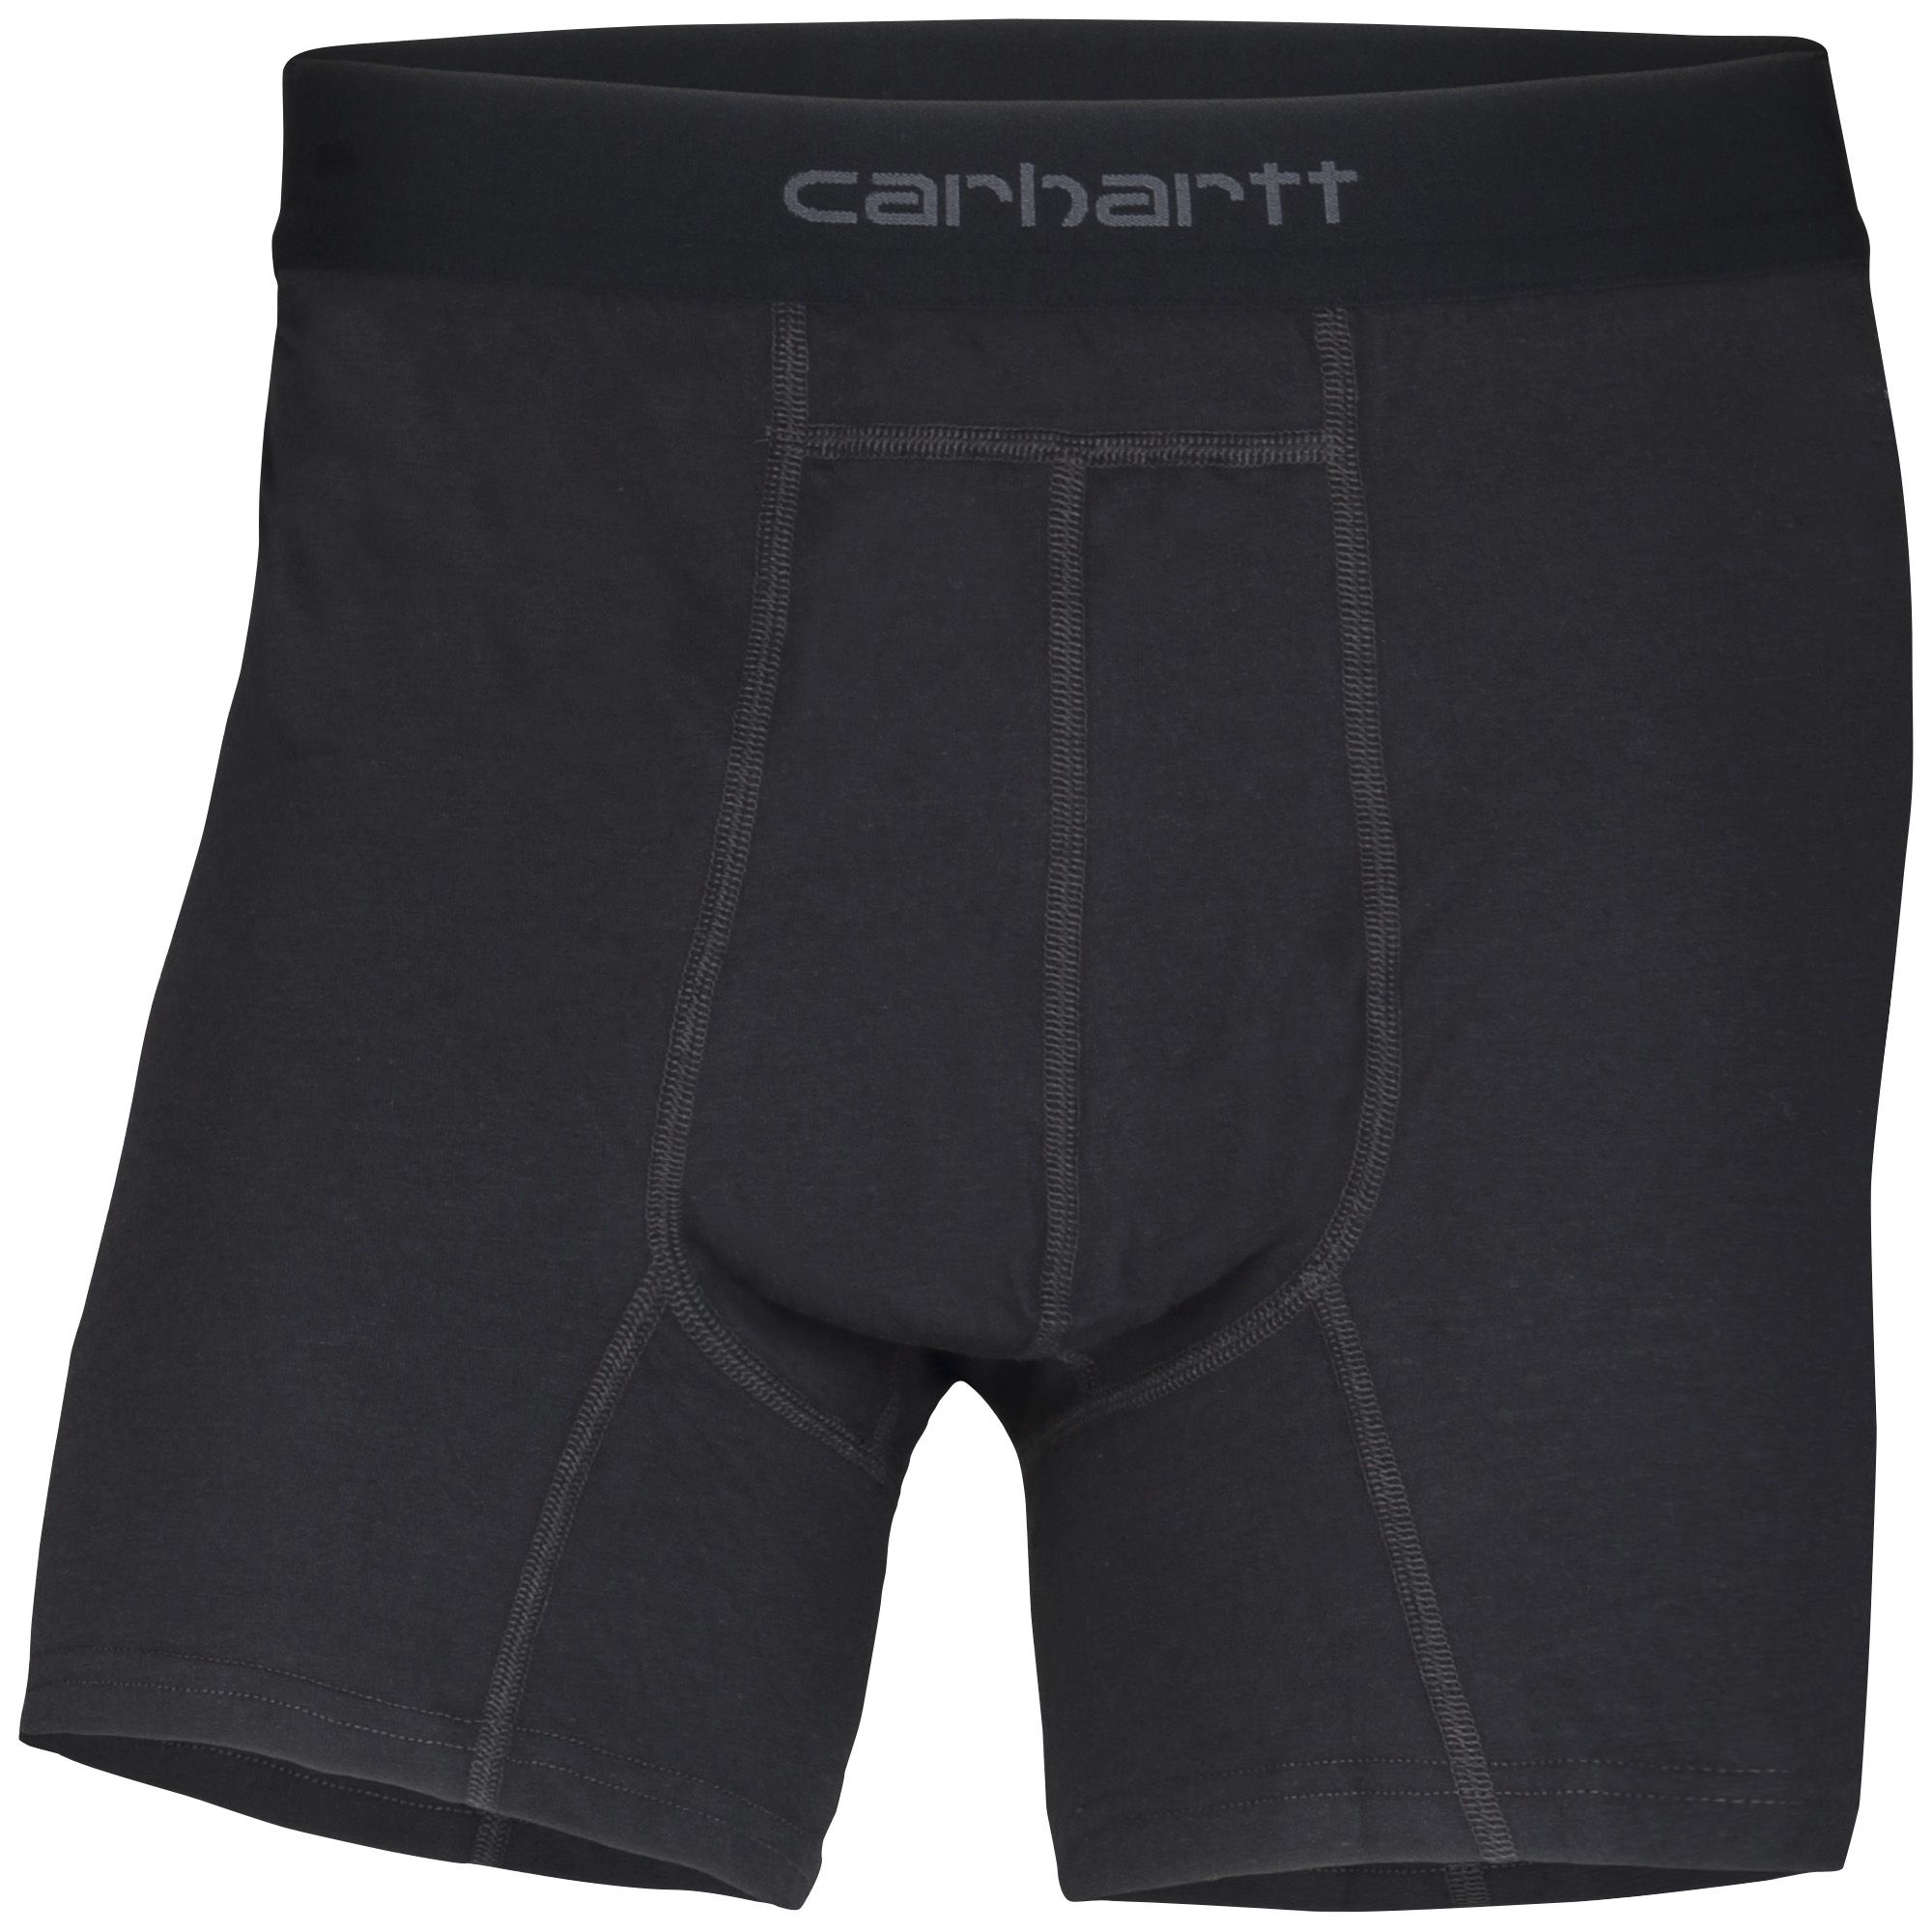 Fingerhut - Carhartt Men's 2-Pack 8 Knit Boxer Briefs